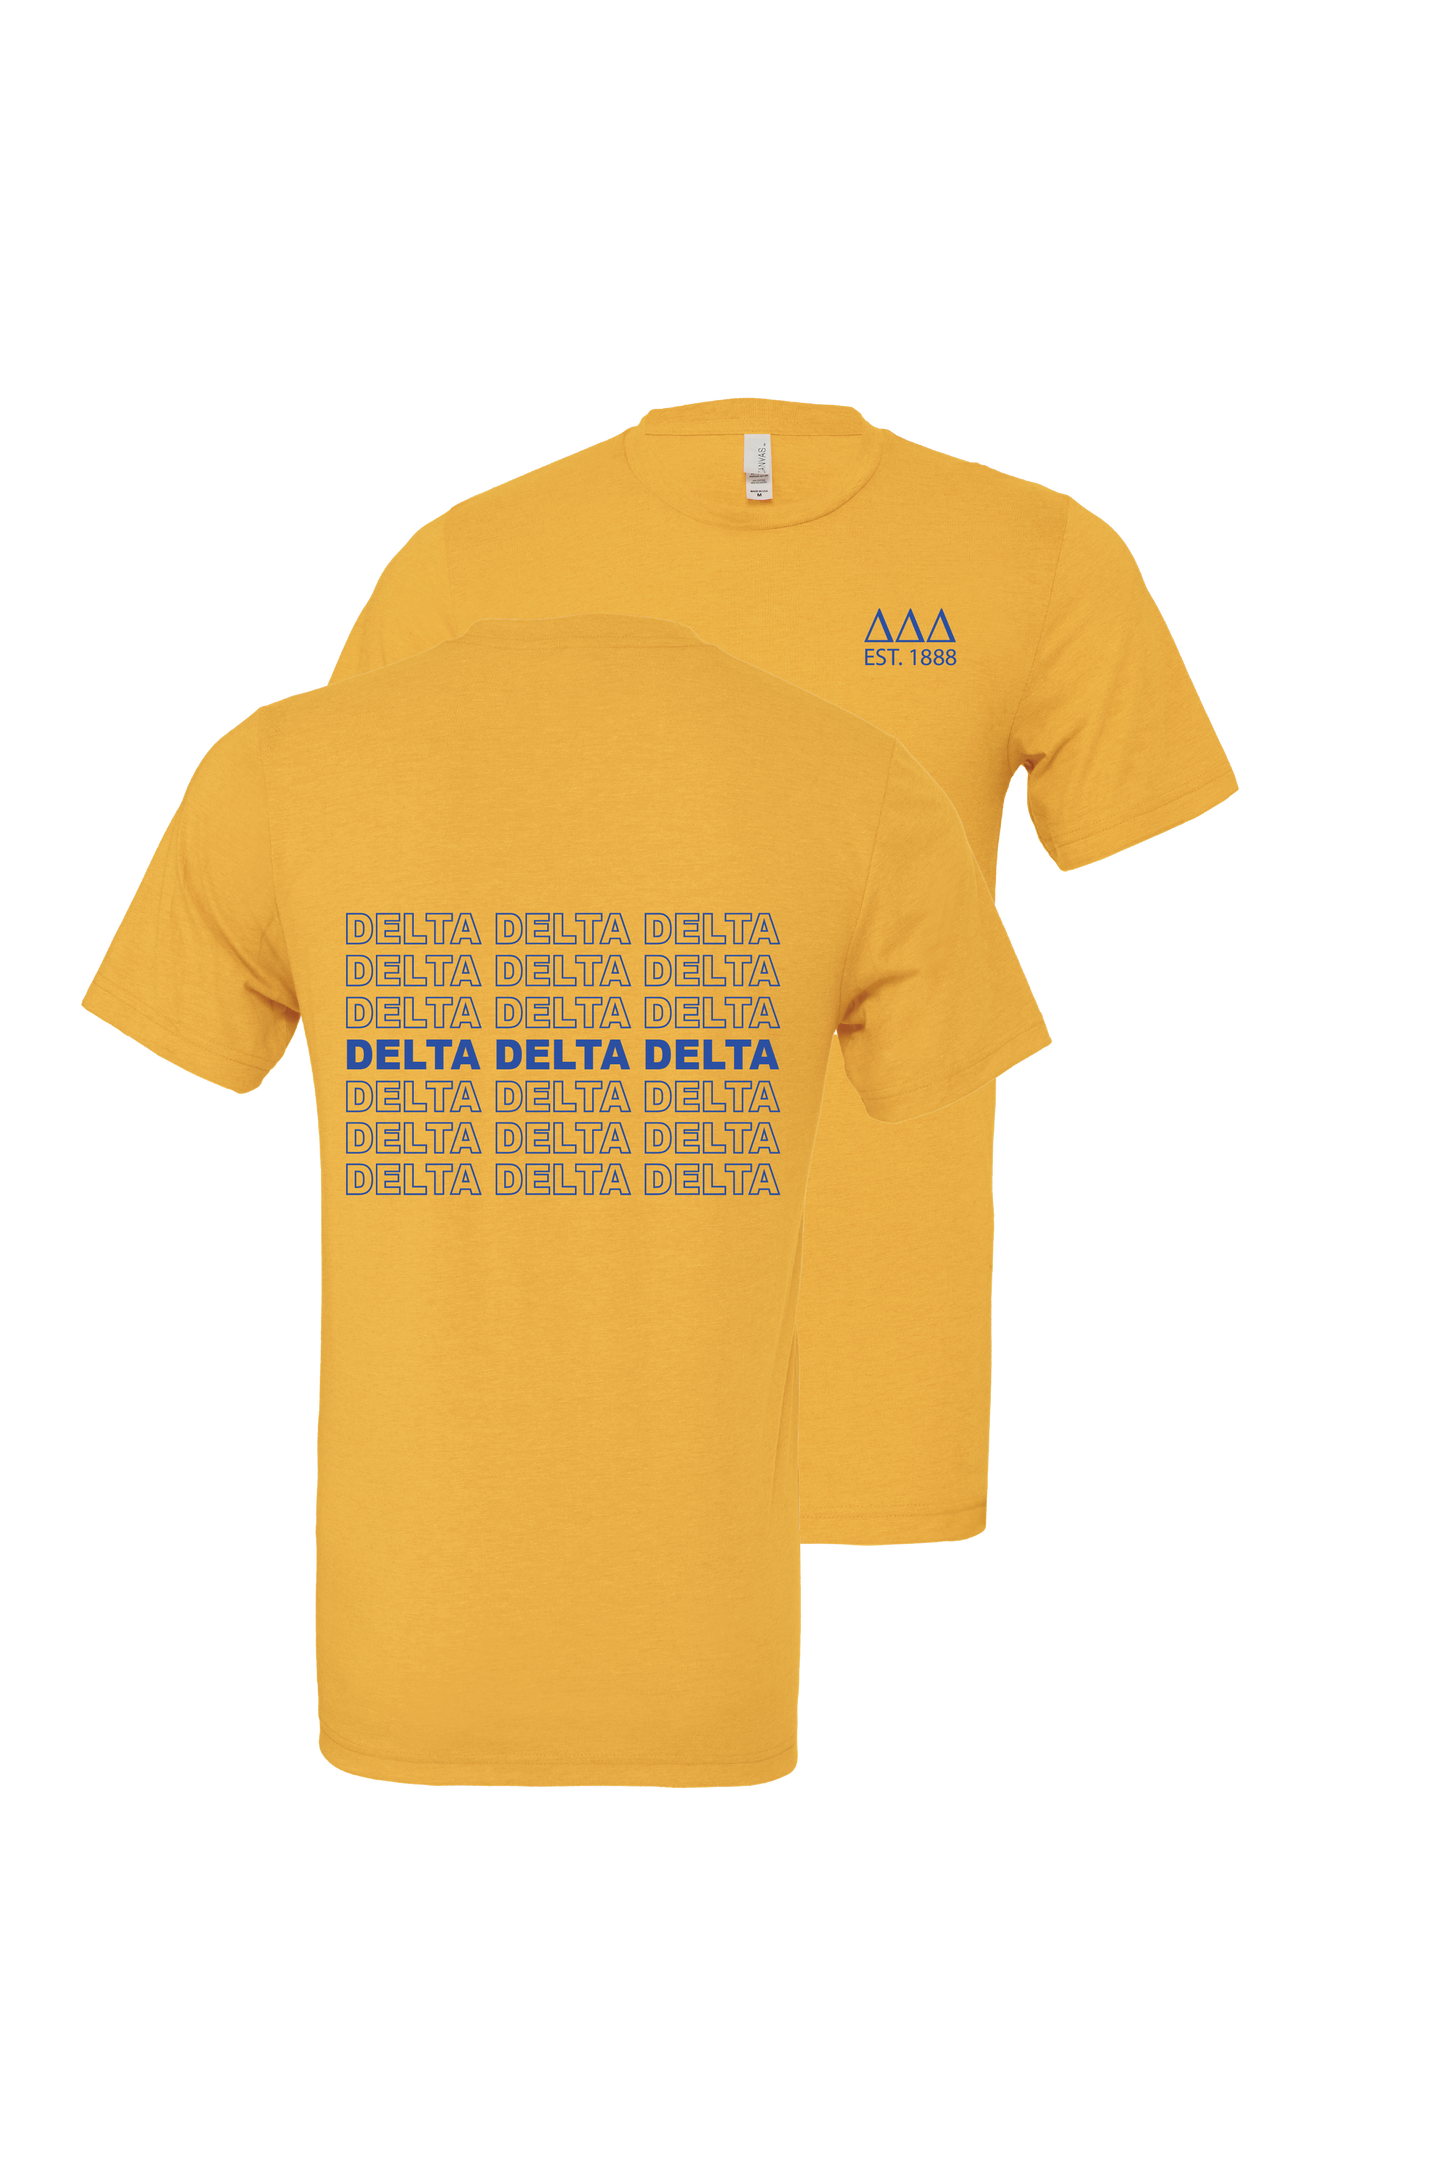 Delta Delta Delta Repeating Name Short Sleeve T-Shirts